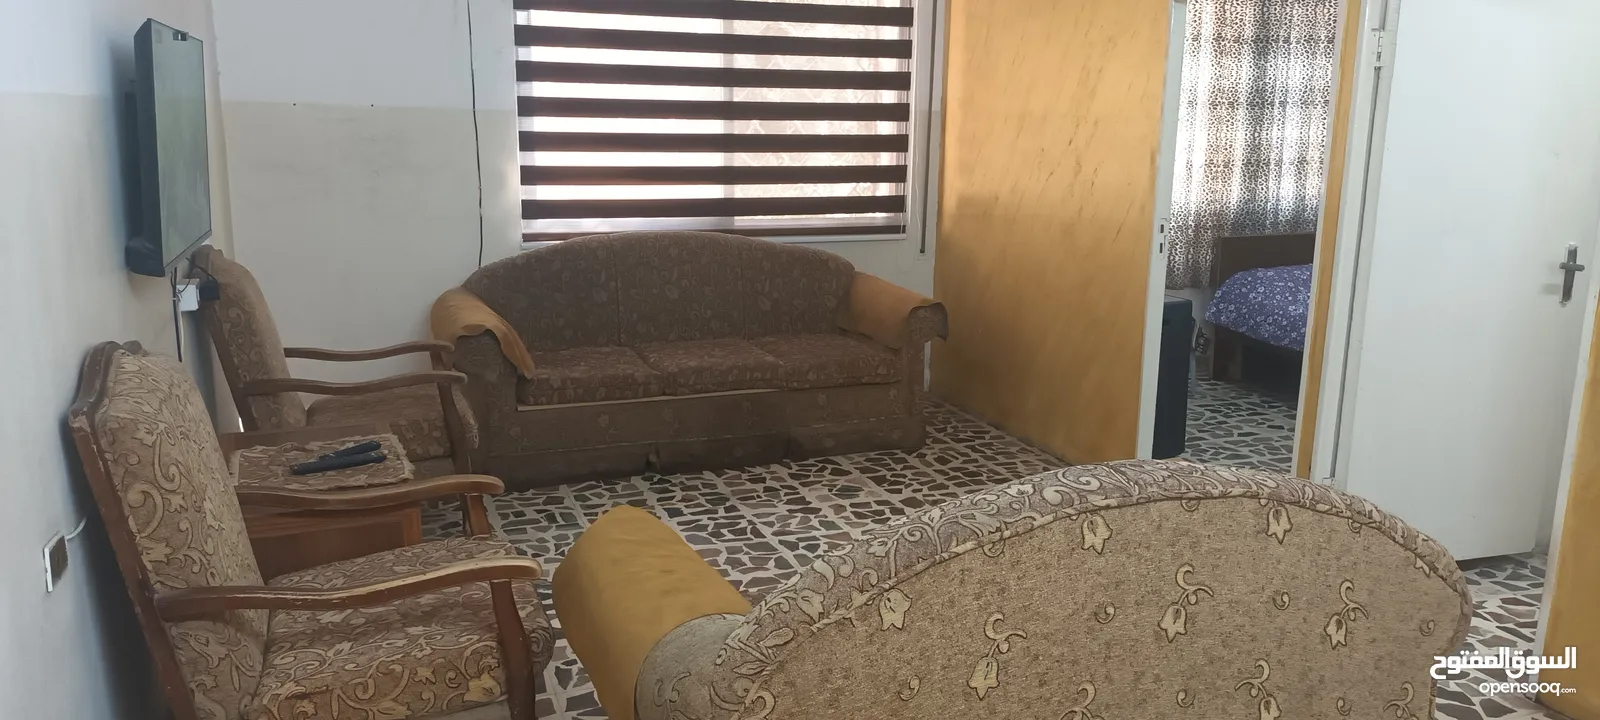 شقة مفروشة أرضية مكيفة للايجار من المالك جبل الحسين قرب دوار الداخلية ومشفى الأمل